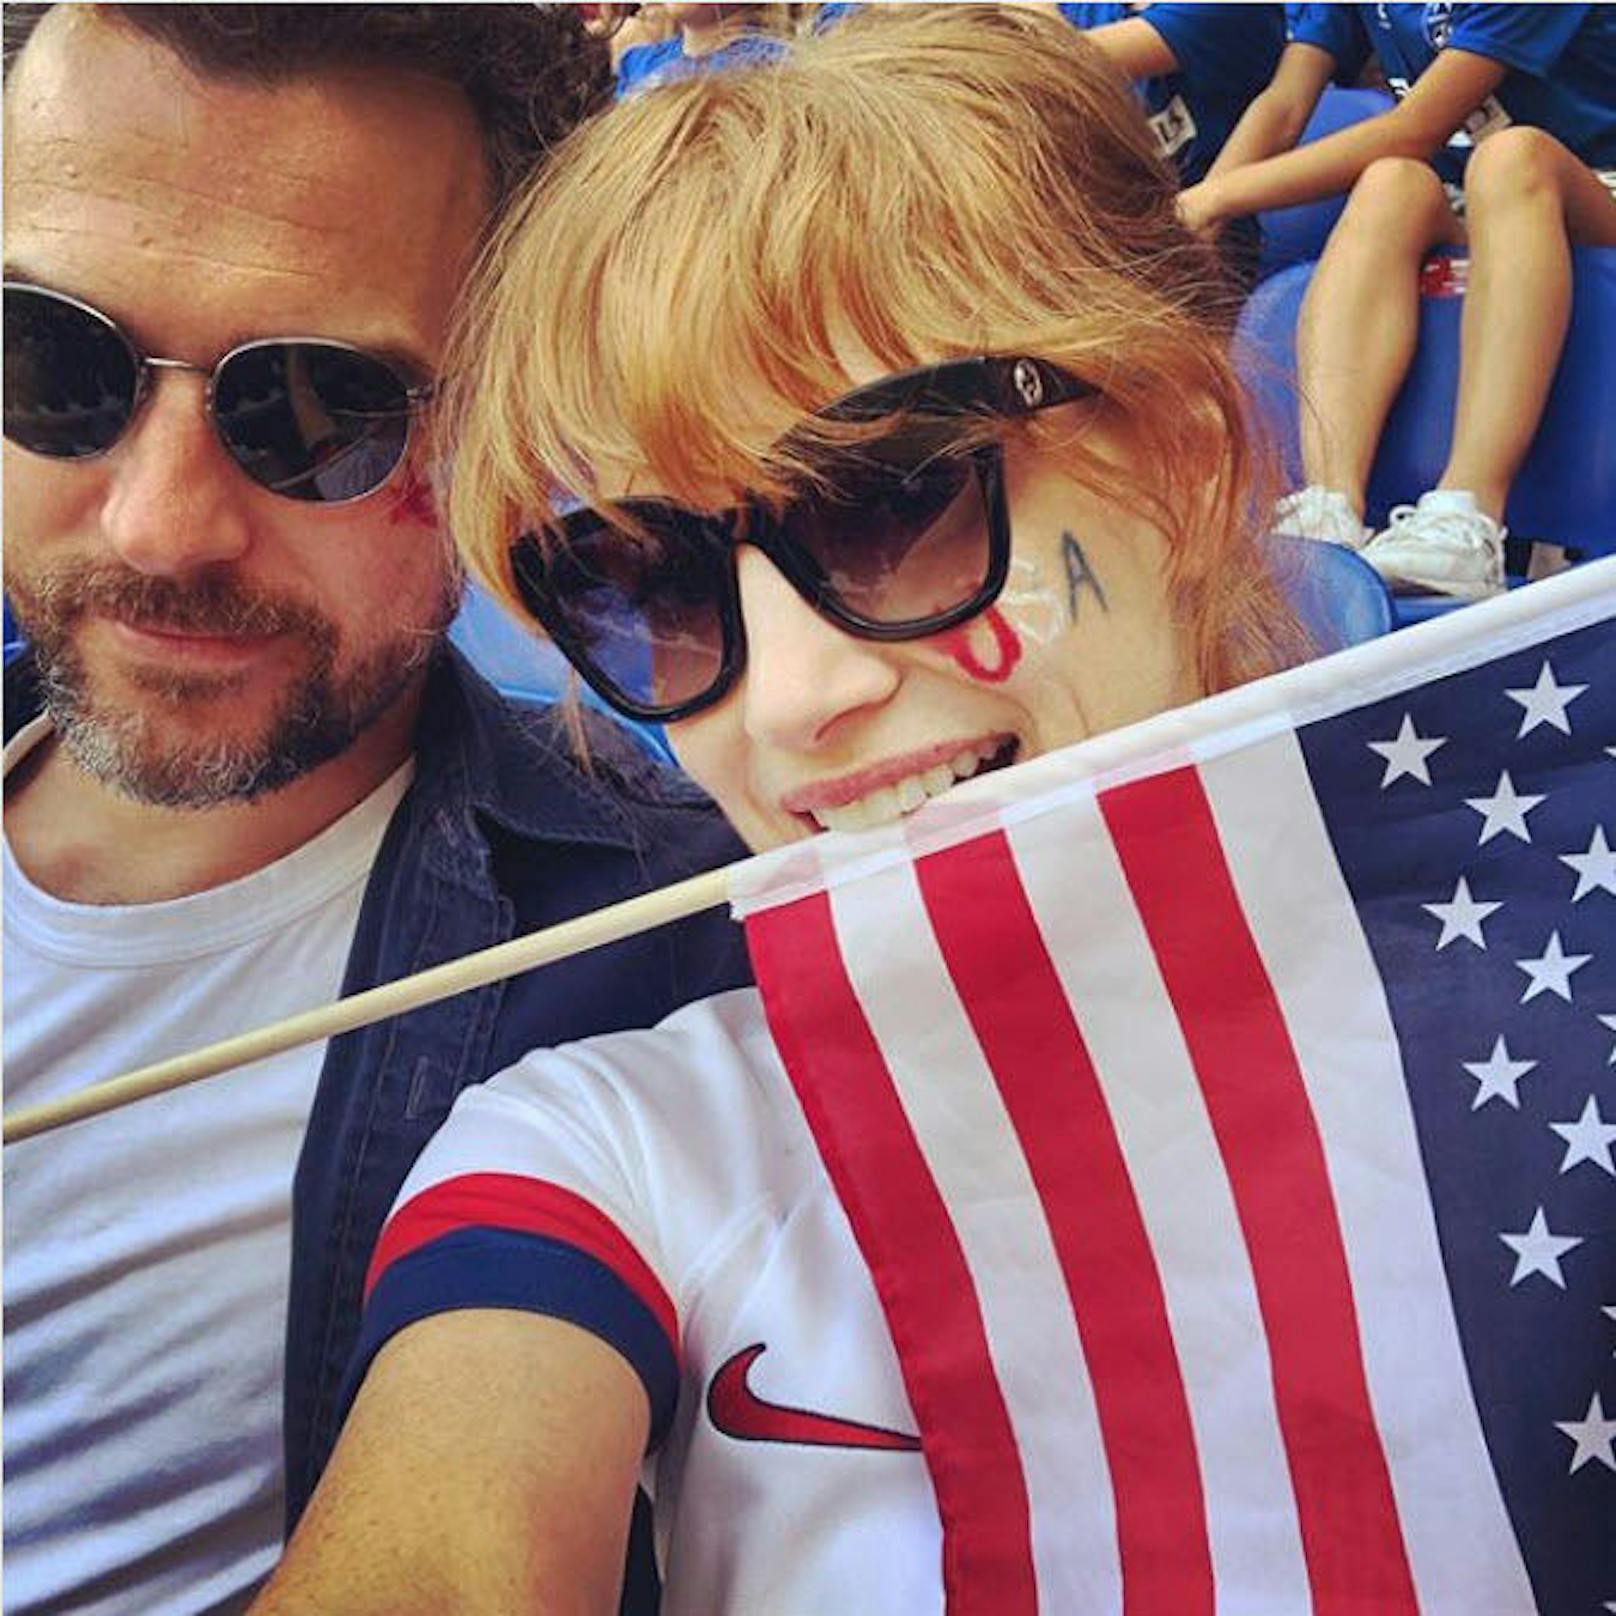 08.07.2019: Gestern gewannen die US-Damen in Frankreich die Frauen-Fußball-WM. Jessica Chastain zeigt auf Instagram, dass auch sie ihr Team vor Ort anfeuerte. 